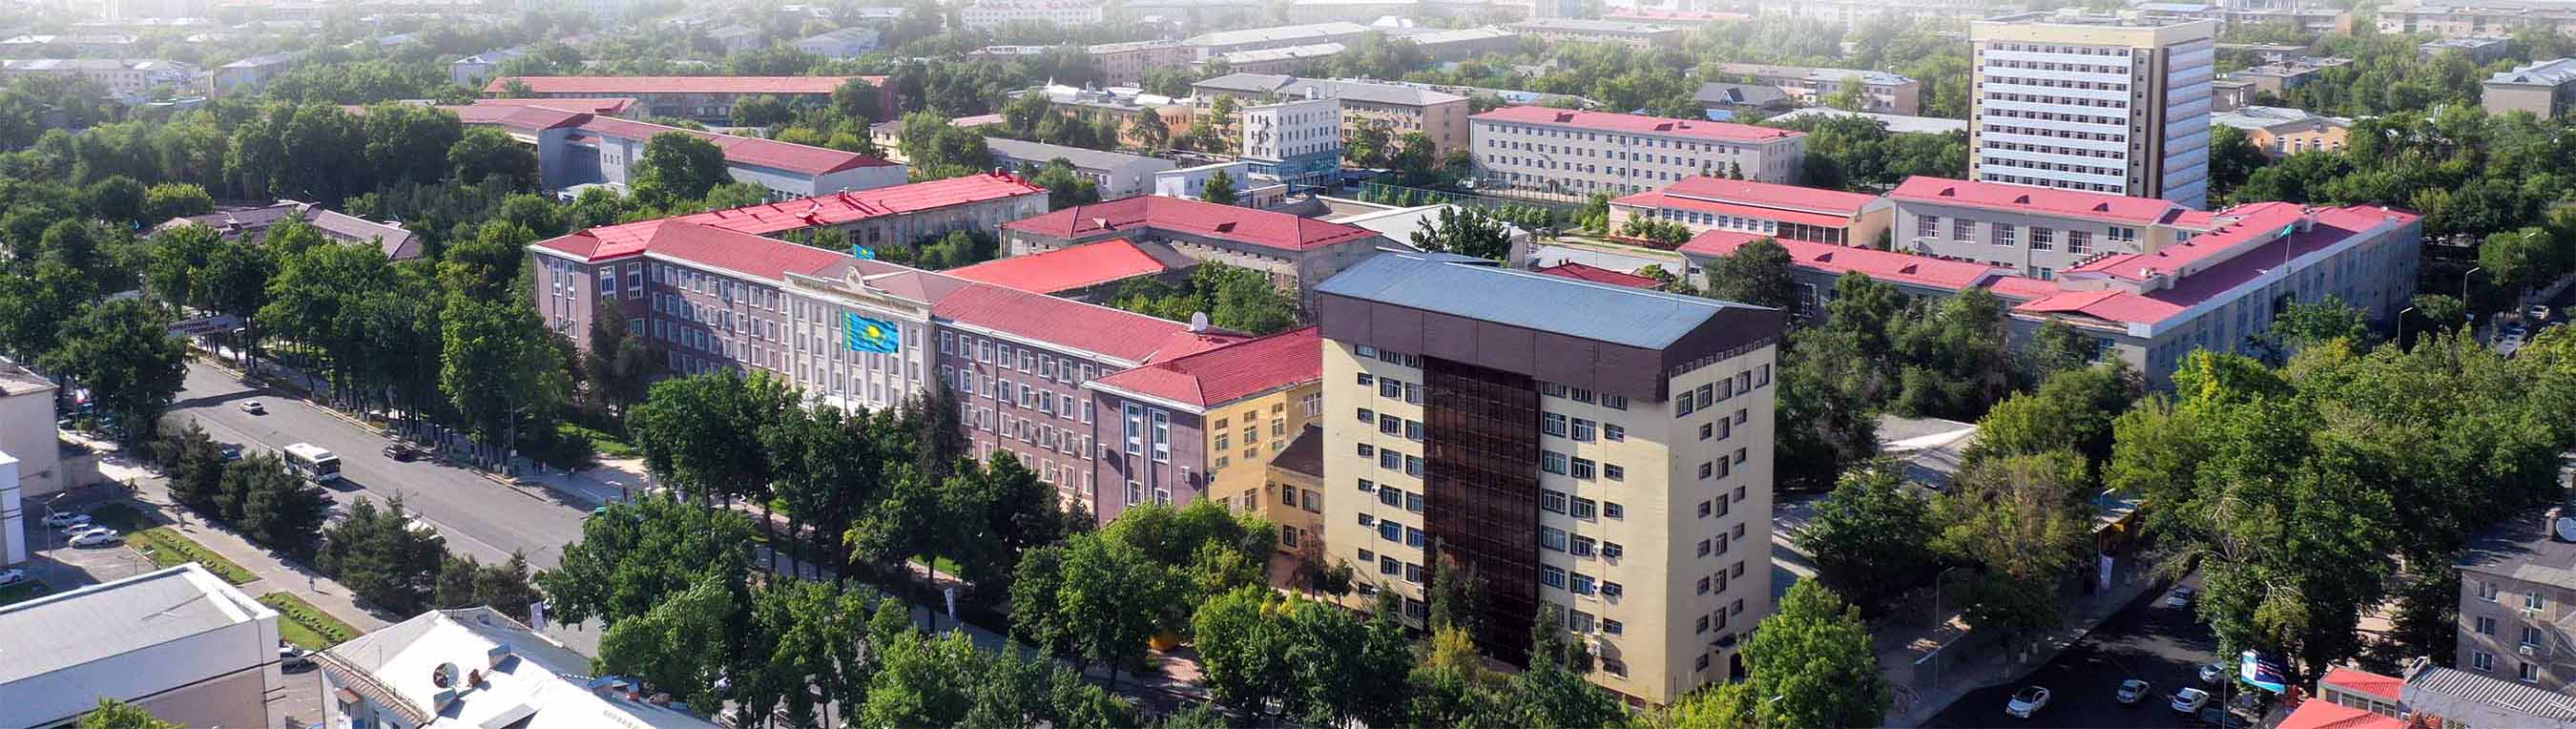 Южно-Казахстанский государственный университет им. М.Ауэзова